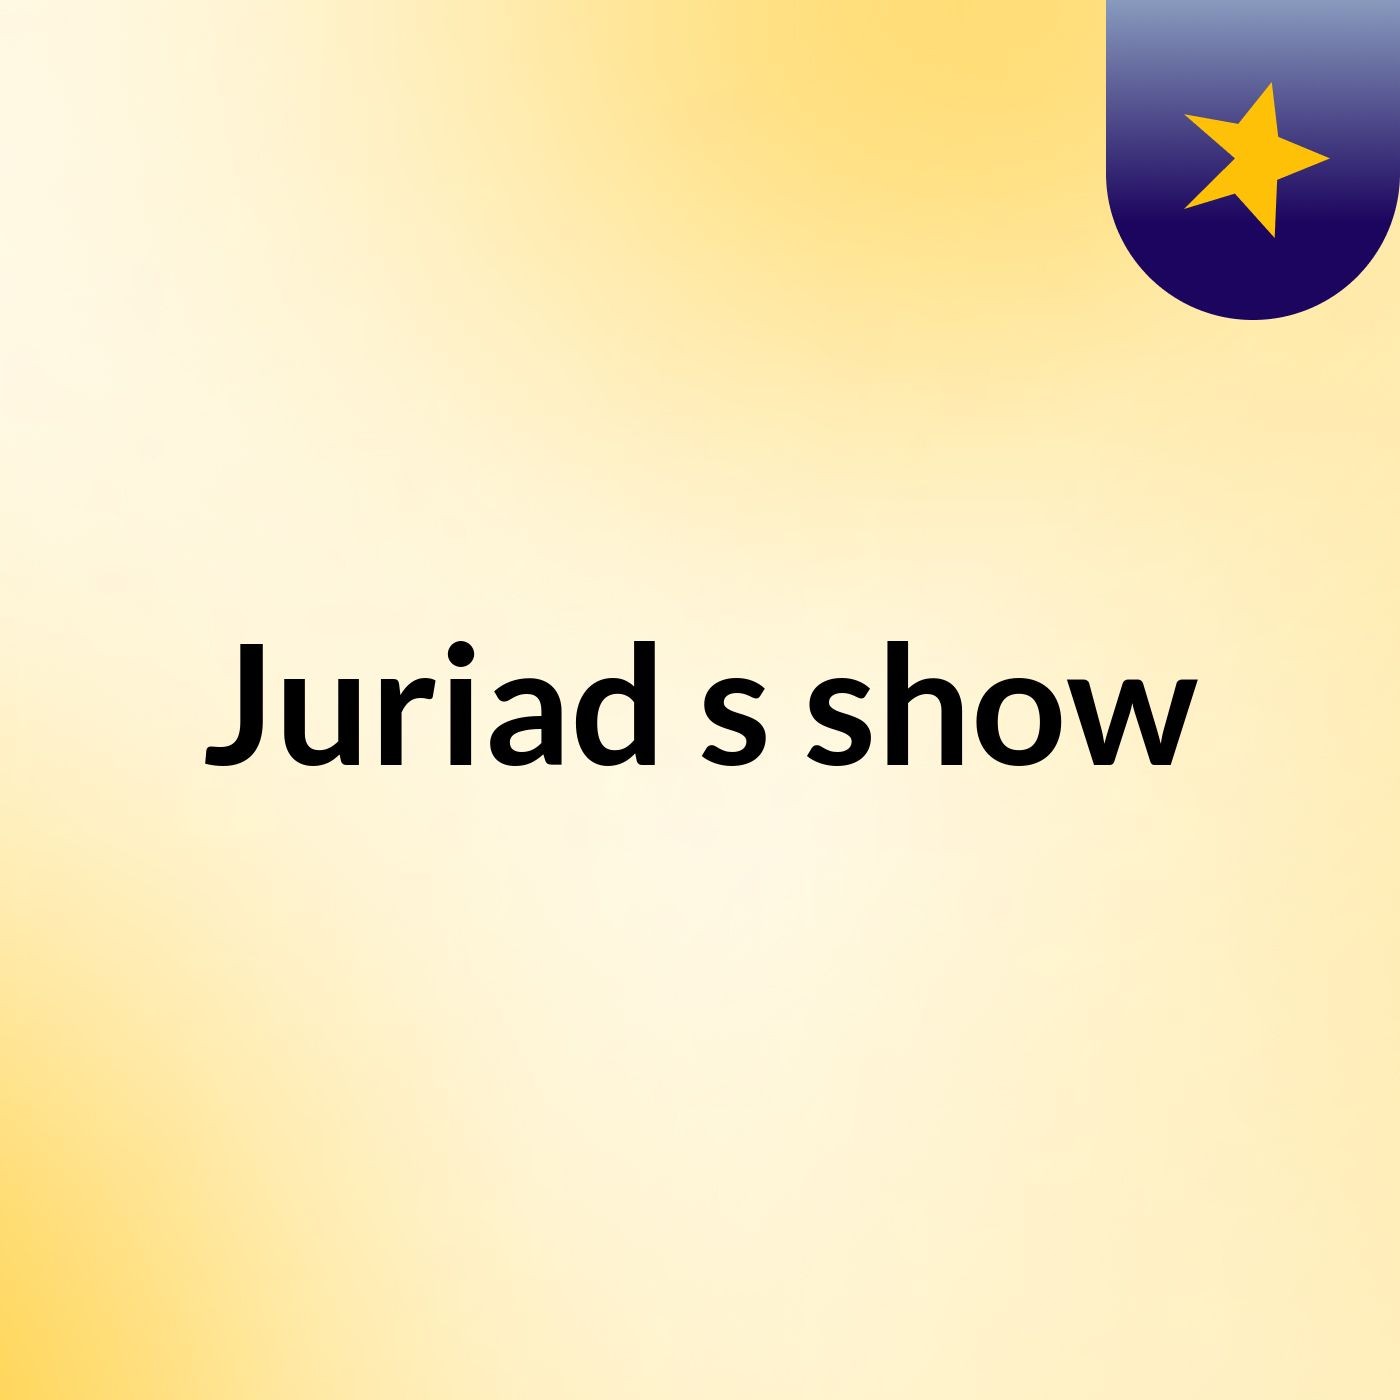 Juriad's show